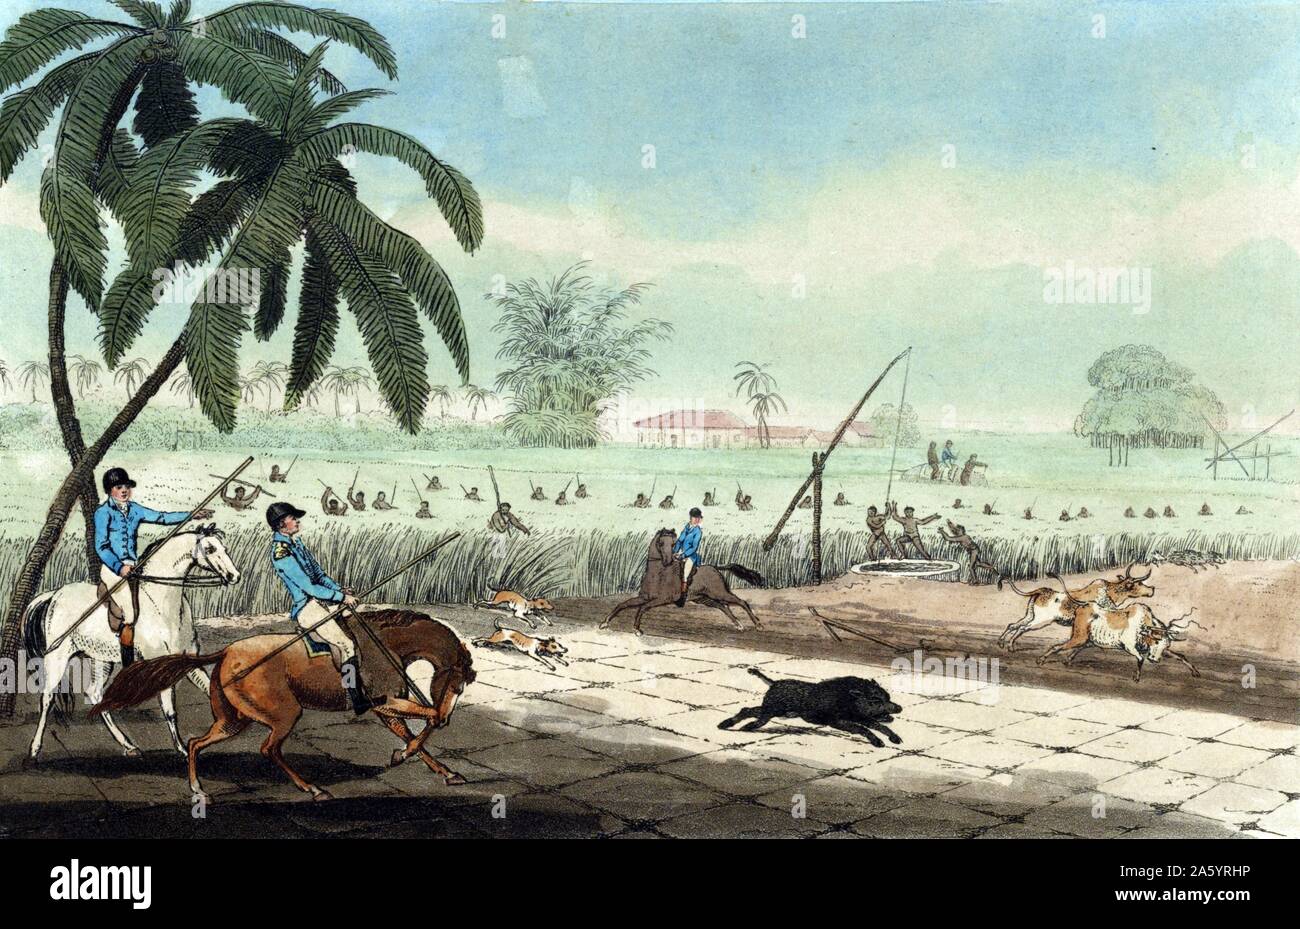 Battre le sucre-cannes pour un porc par Samuel Howitt, 1765 ?-1822, artiste 1807 gravure et aquatinte., colorées à la main, montre trois hommes à cheval, portant des lances, en attente, comme la canne à sucre battre systématiquement les autochtones avec le bambou et le personnel, à l'aide de deux chiens, conduire un porc sauvage de couvrir les l'attente des chasseurs. Également montré sont deux boeufs attelés à une charrue, fuyant pour leur propre sécurité, et d'Autochtones autour d'un puits d'irrigation au bord de la champ de canne Banque D'Images